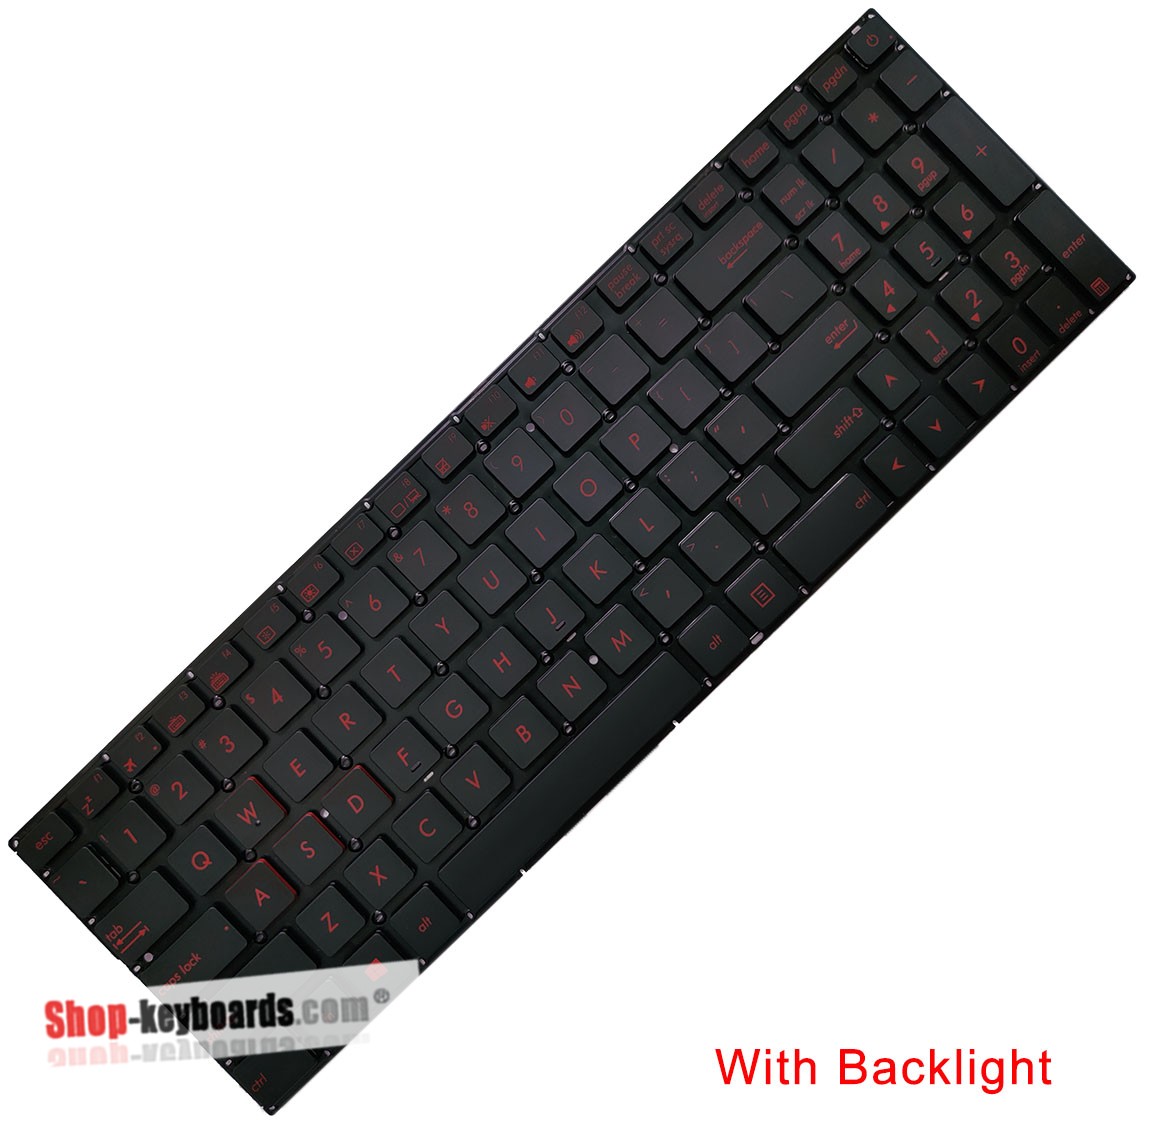 Asus 0KNB0-662EBG00 Keyboard replacement